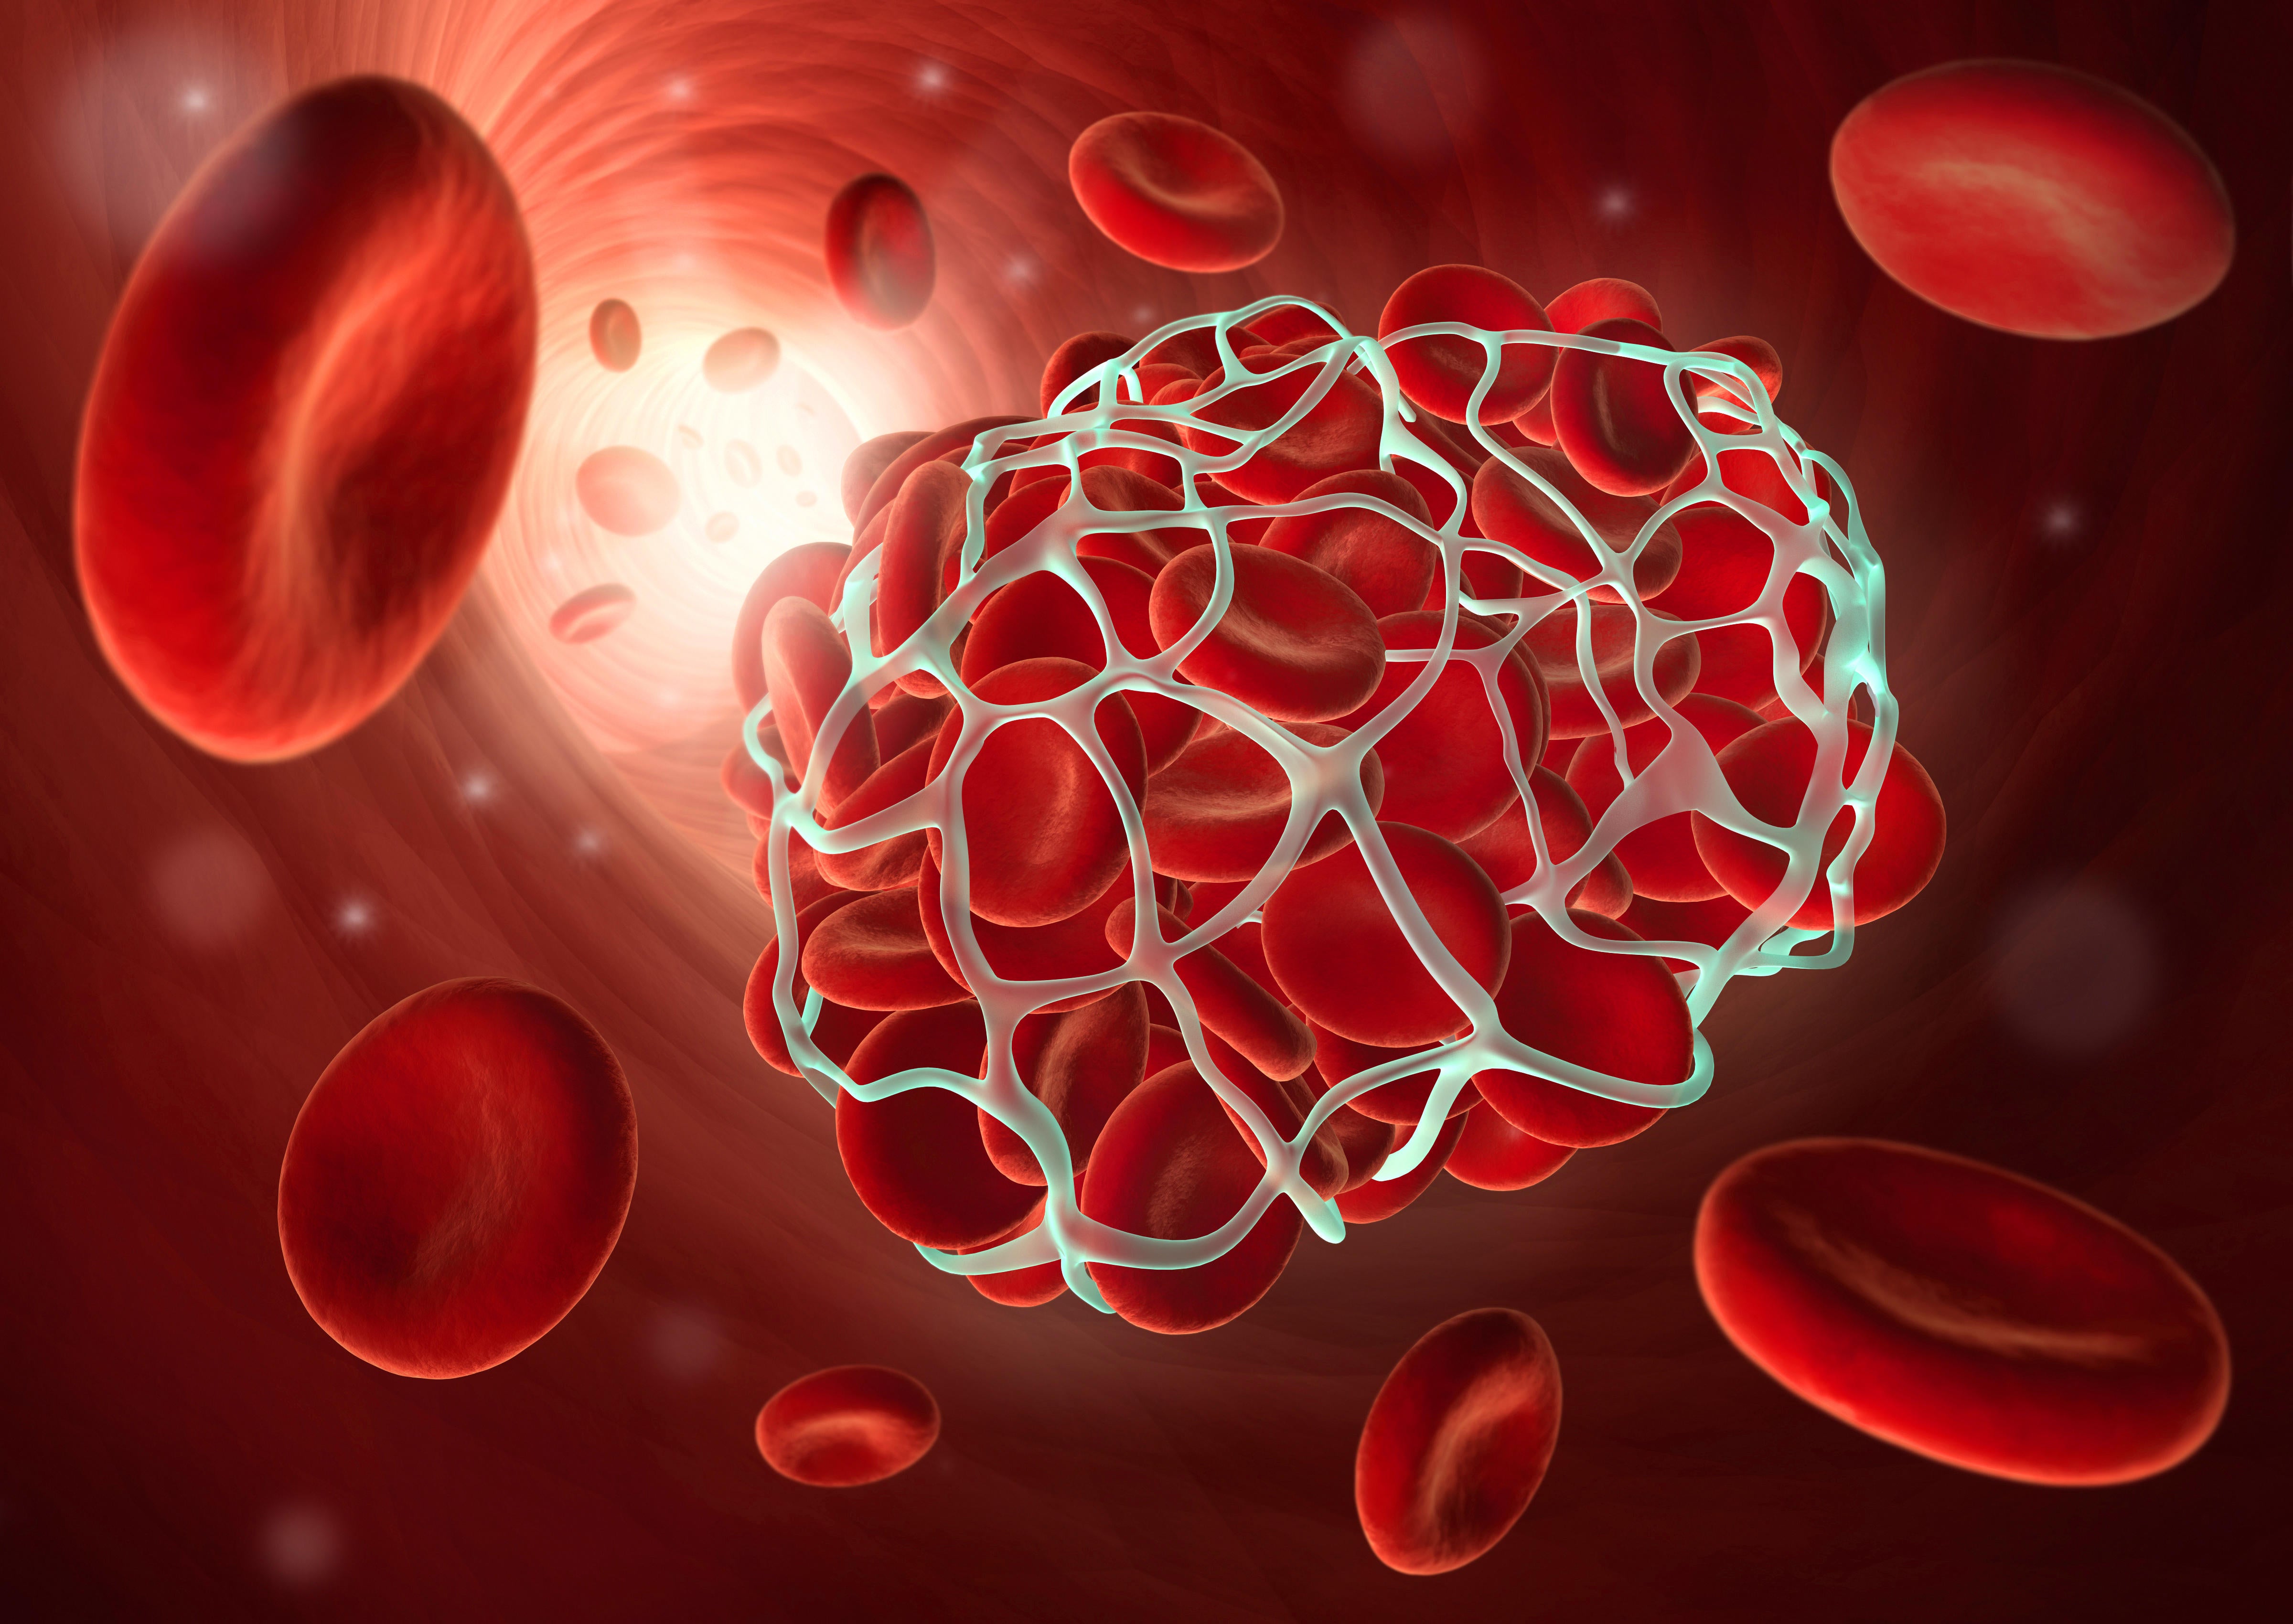 Medical illustration of a blood clot